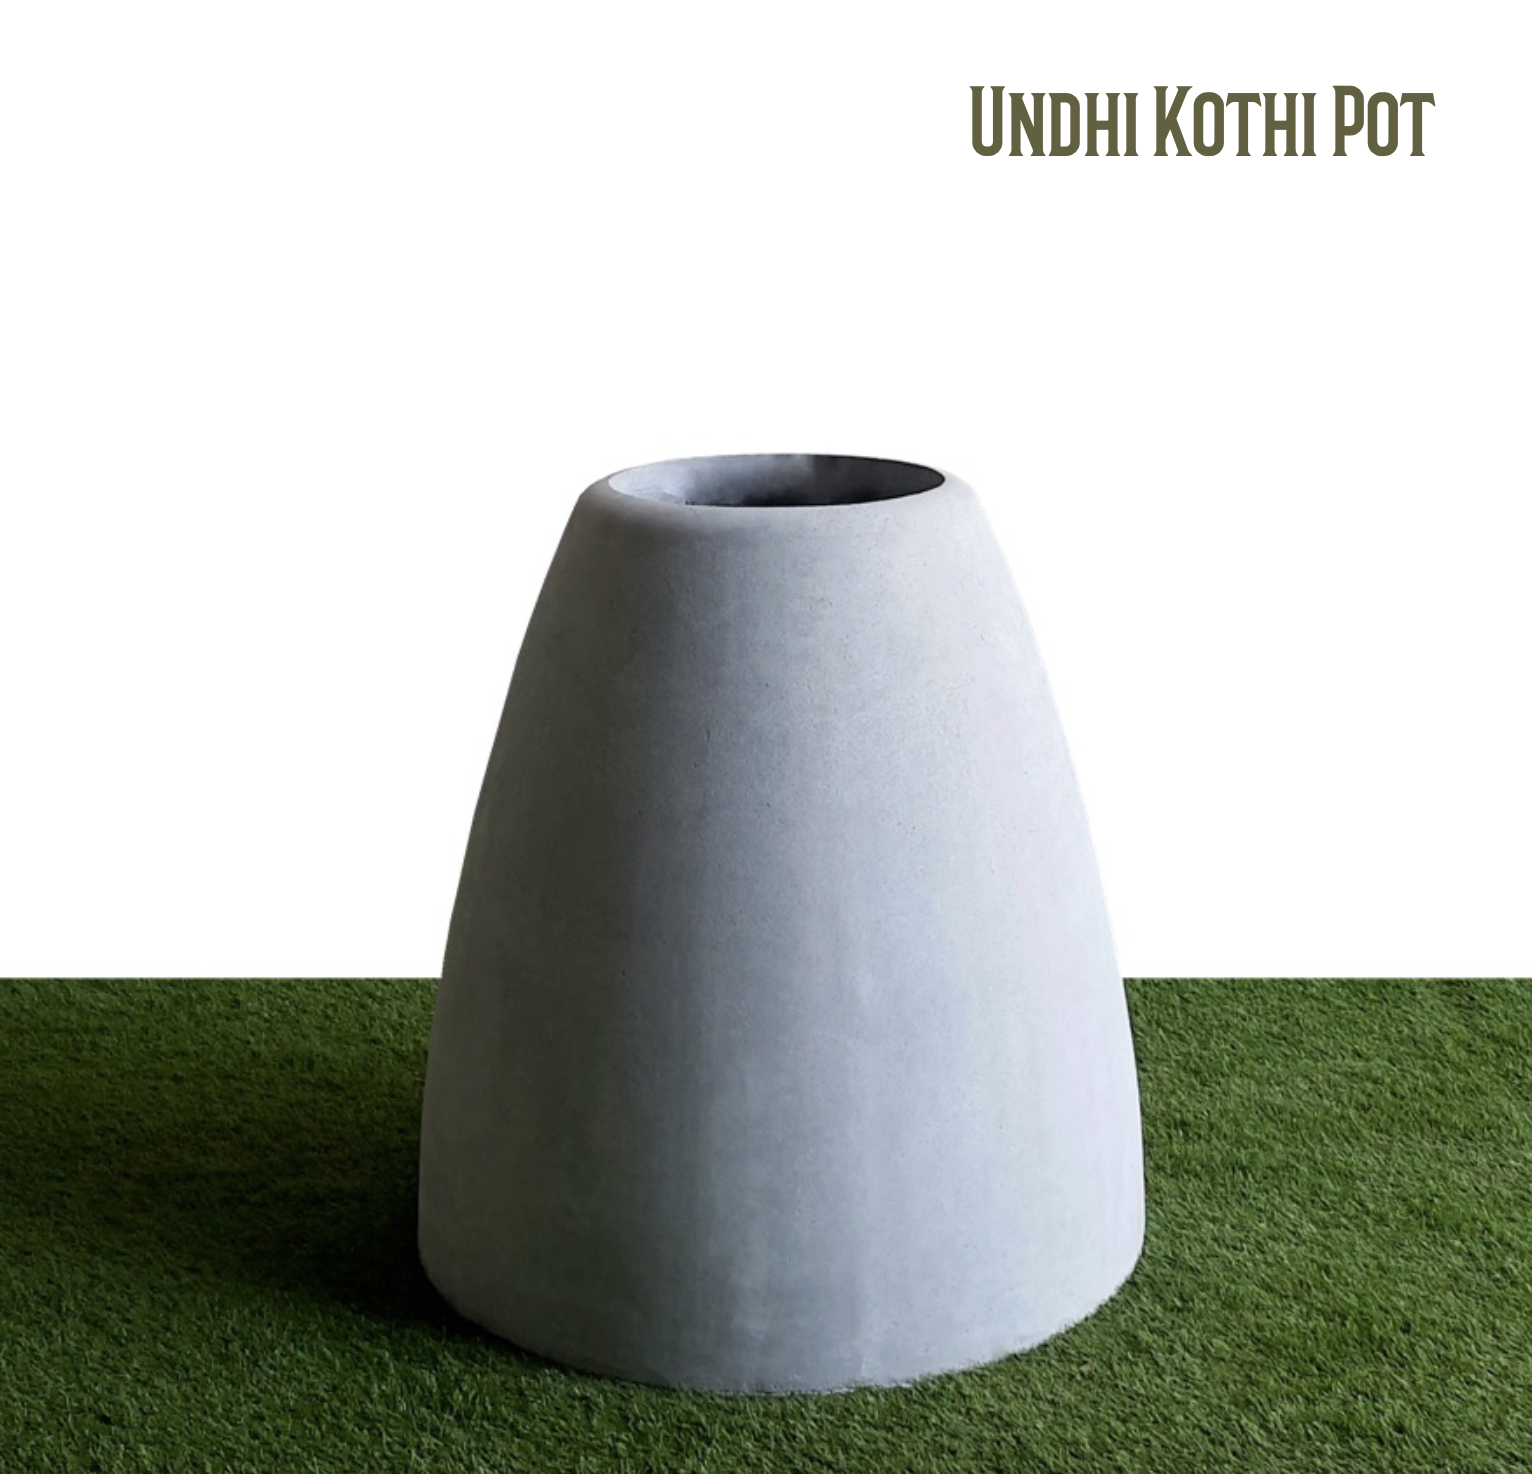 Undhi Kothi Pot